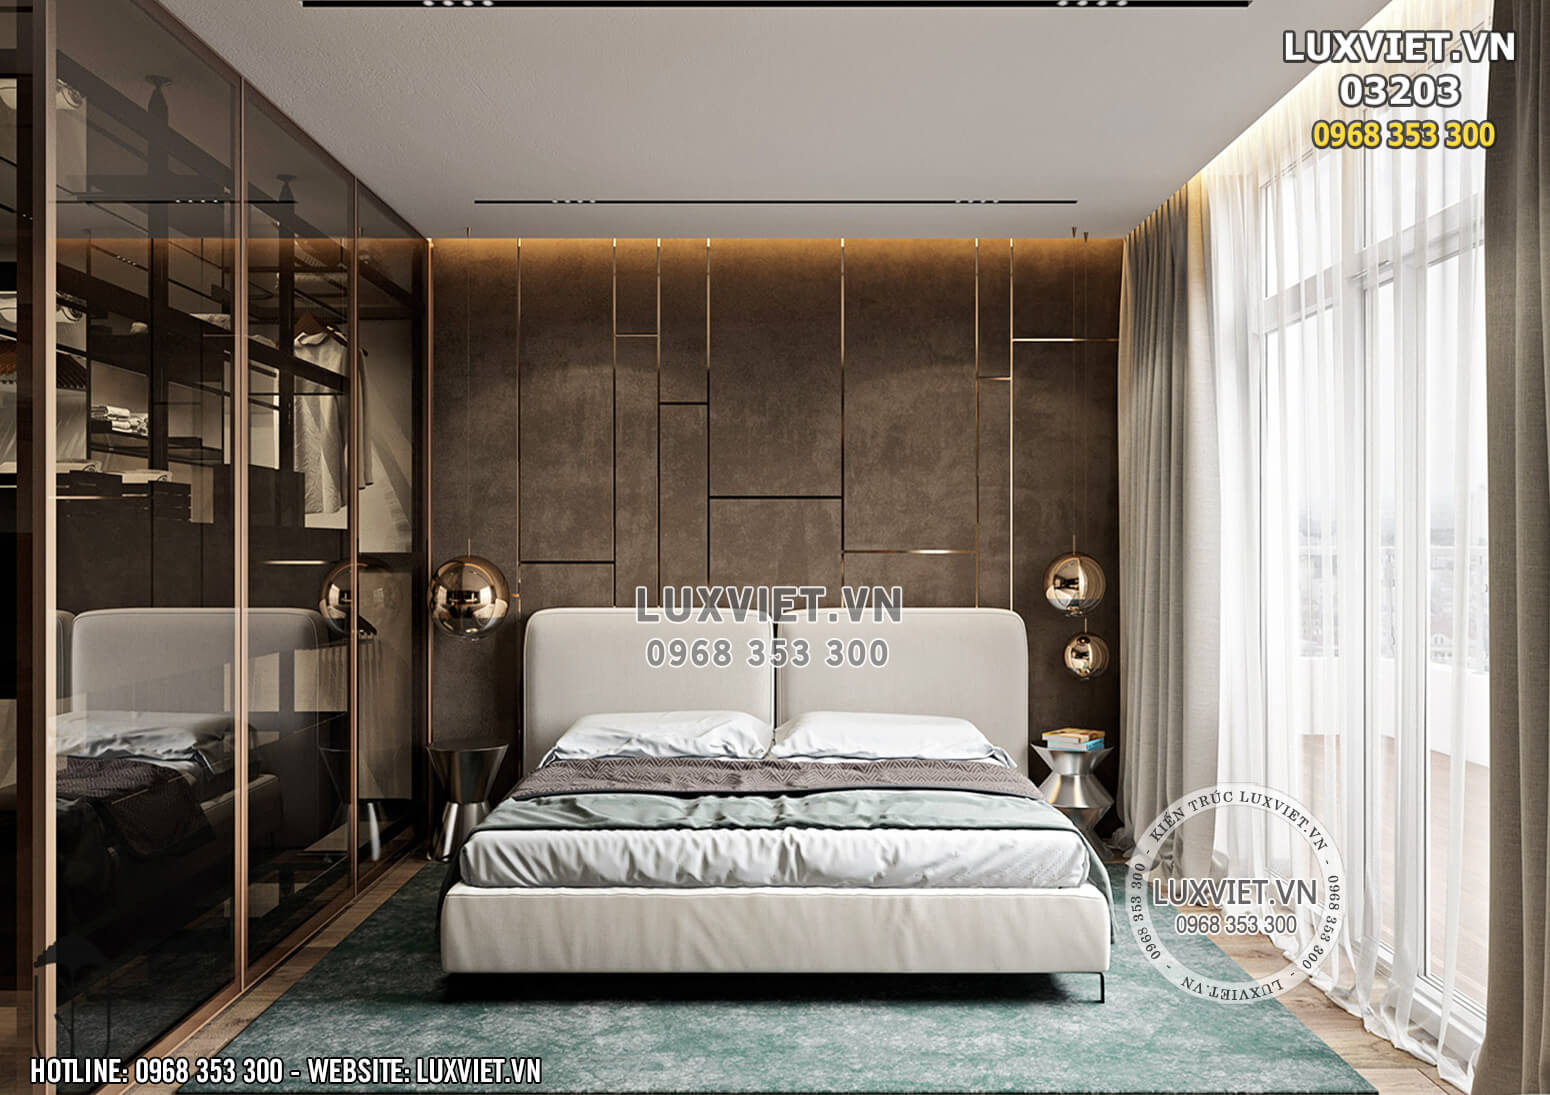 Hình ảnh: Phòng ngủ thiết kế nội thất chung cư hiện đại - LV 03203